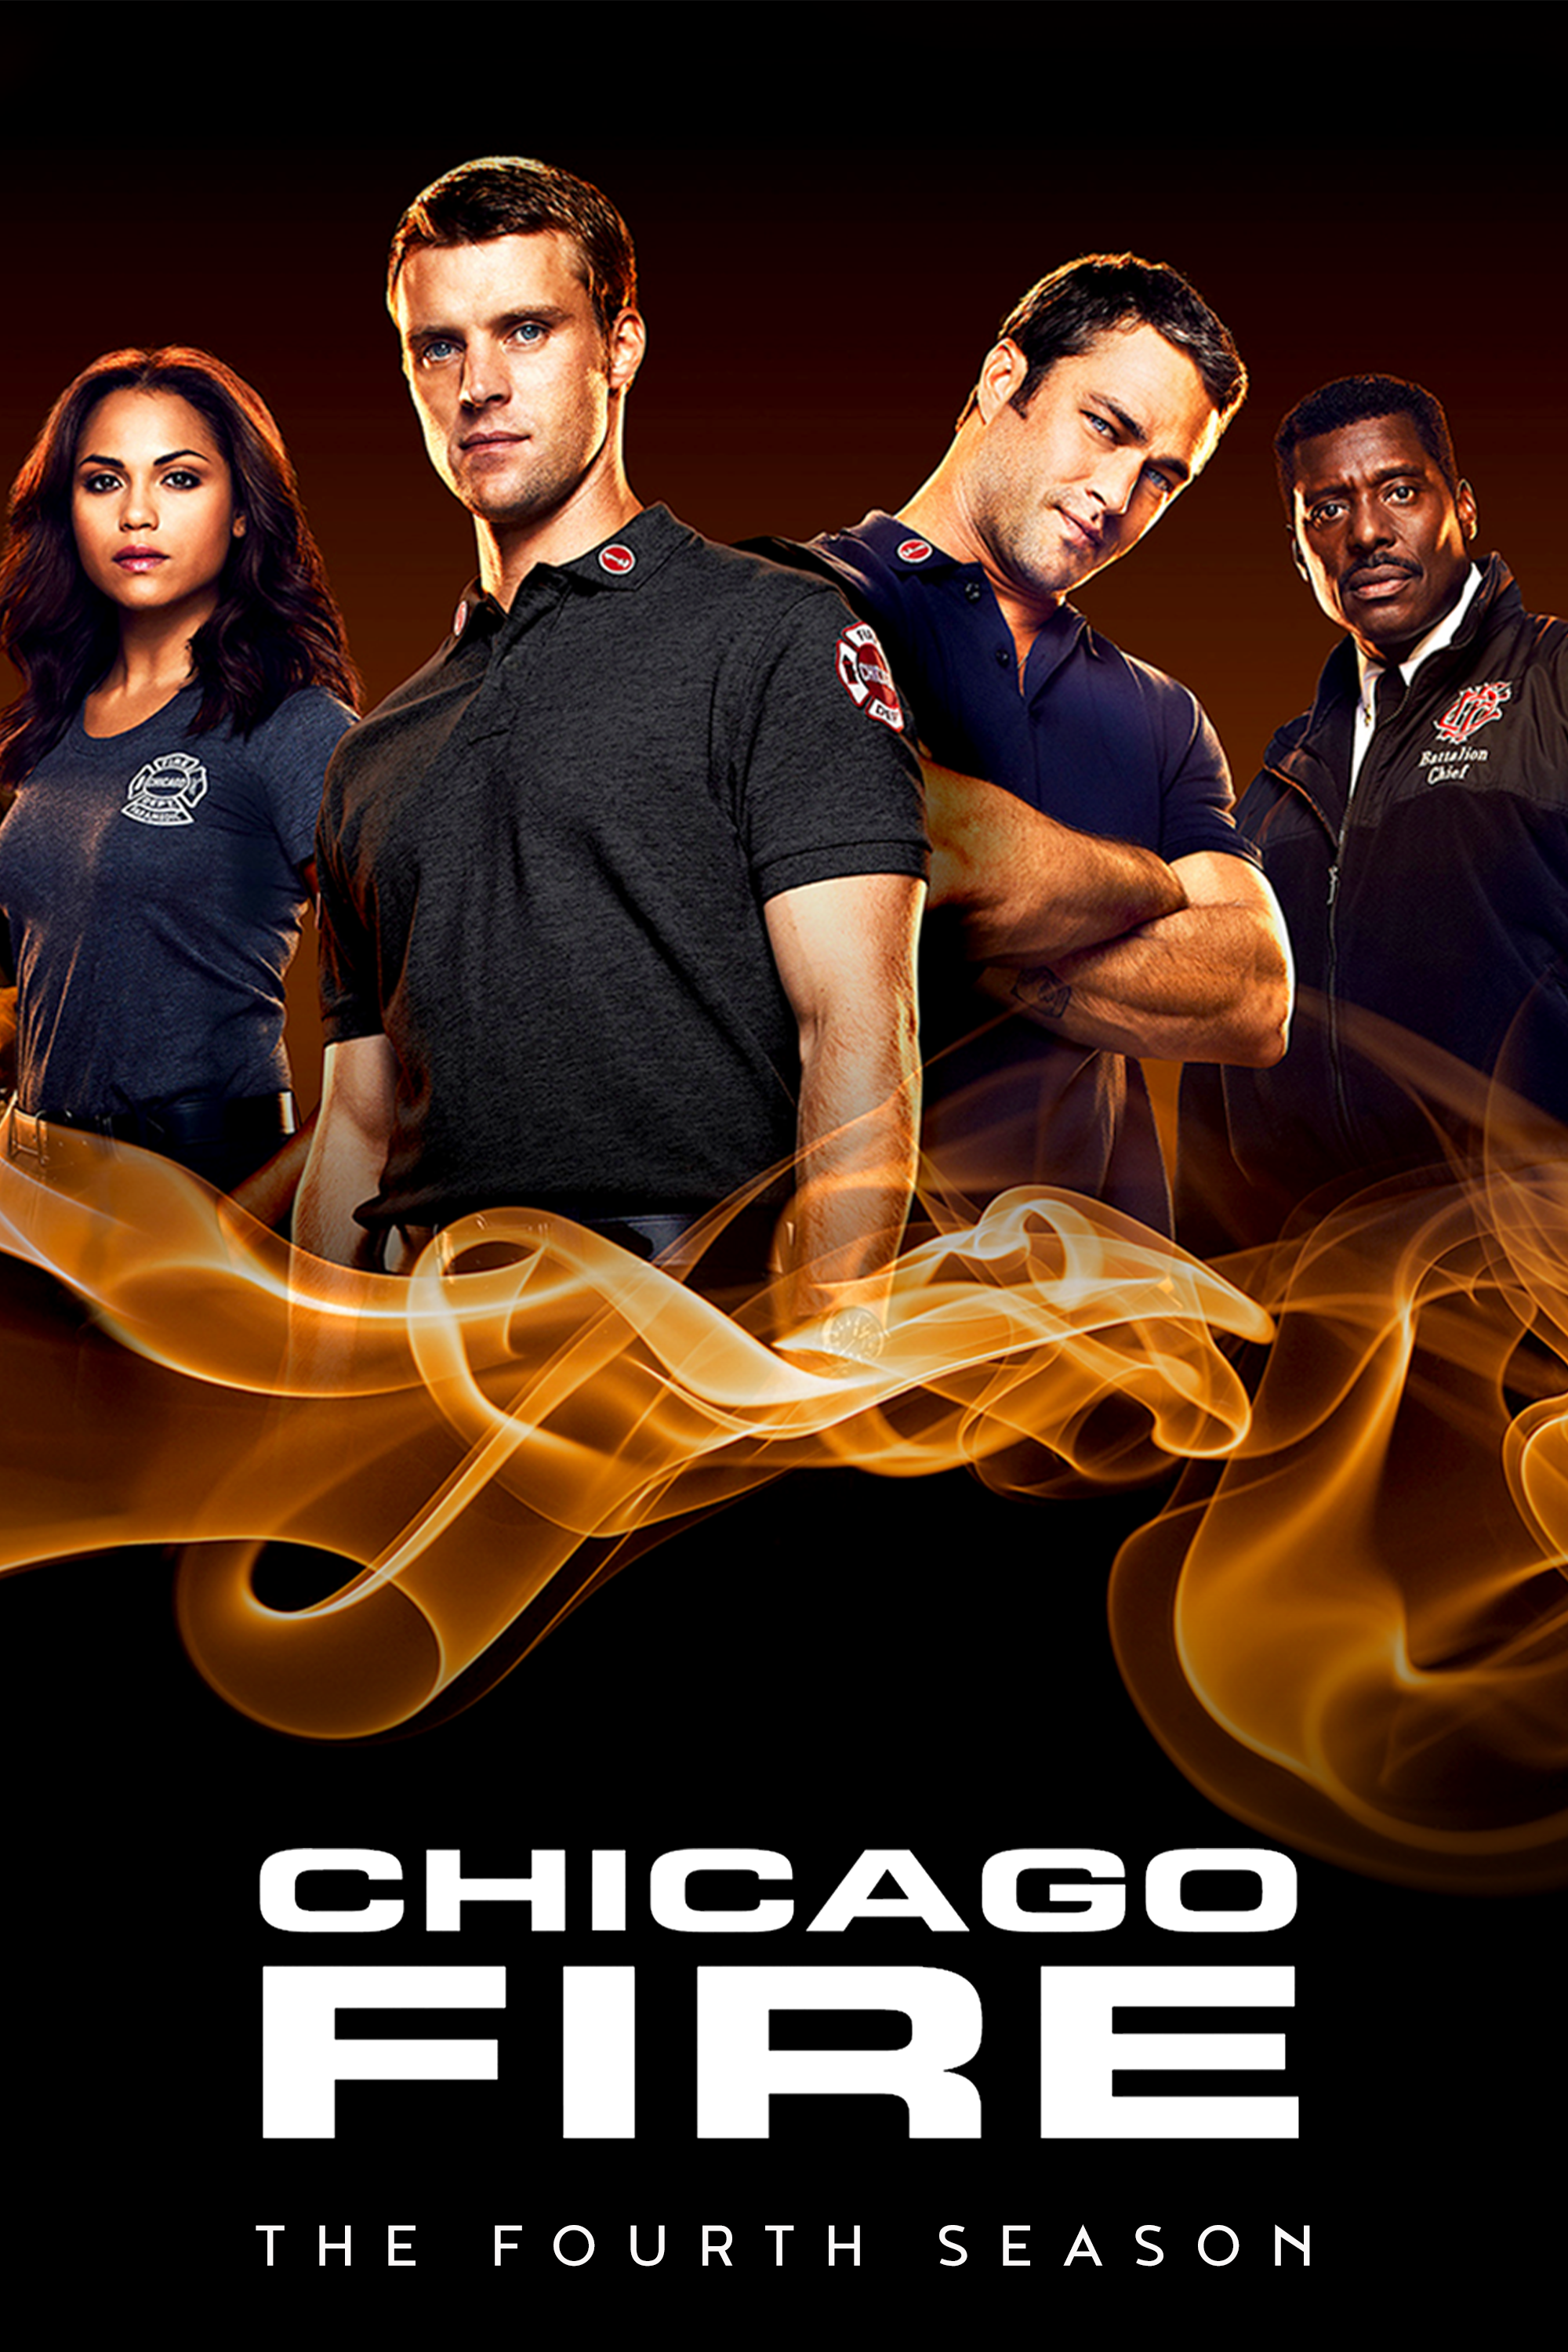 ดูหนังออนไลน์ฟรี Chicago Fire Season 4 EP.2 ชิคาโก้ ไฟร์ หน่วยดับเพลิงท้านรก ซีซั่นที่ 4 ตอนที่ 2